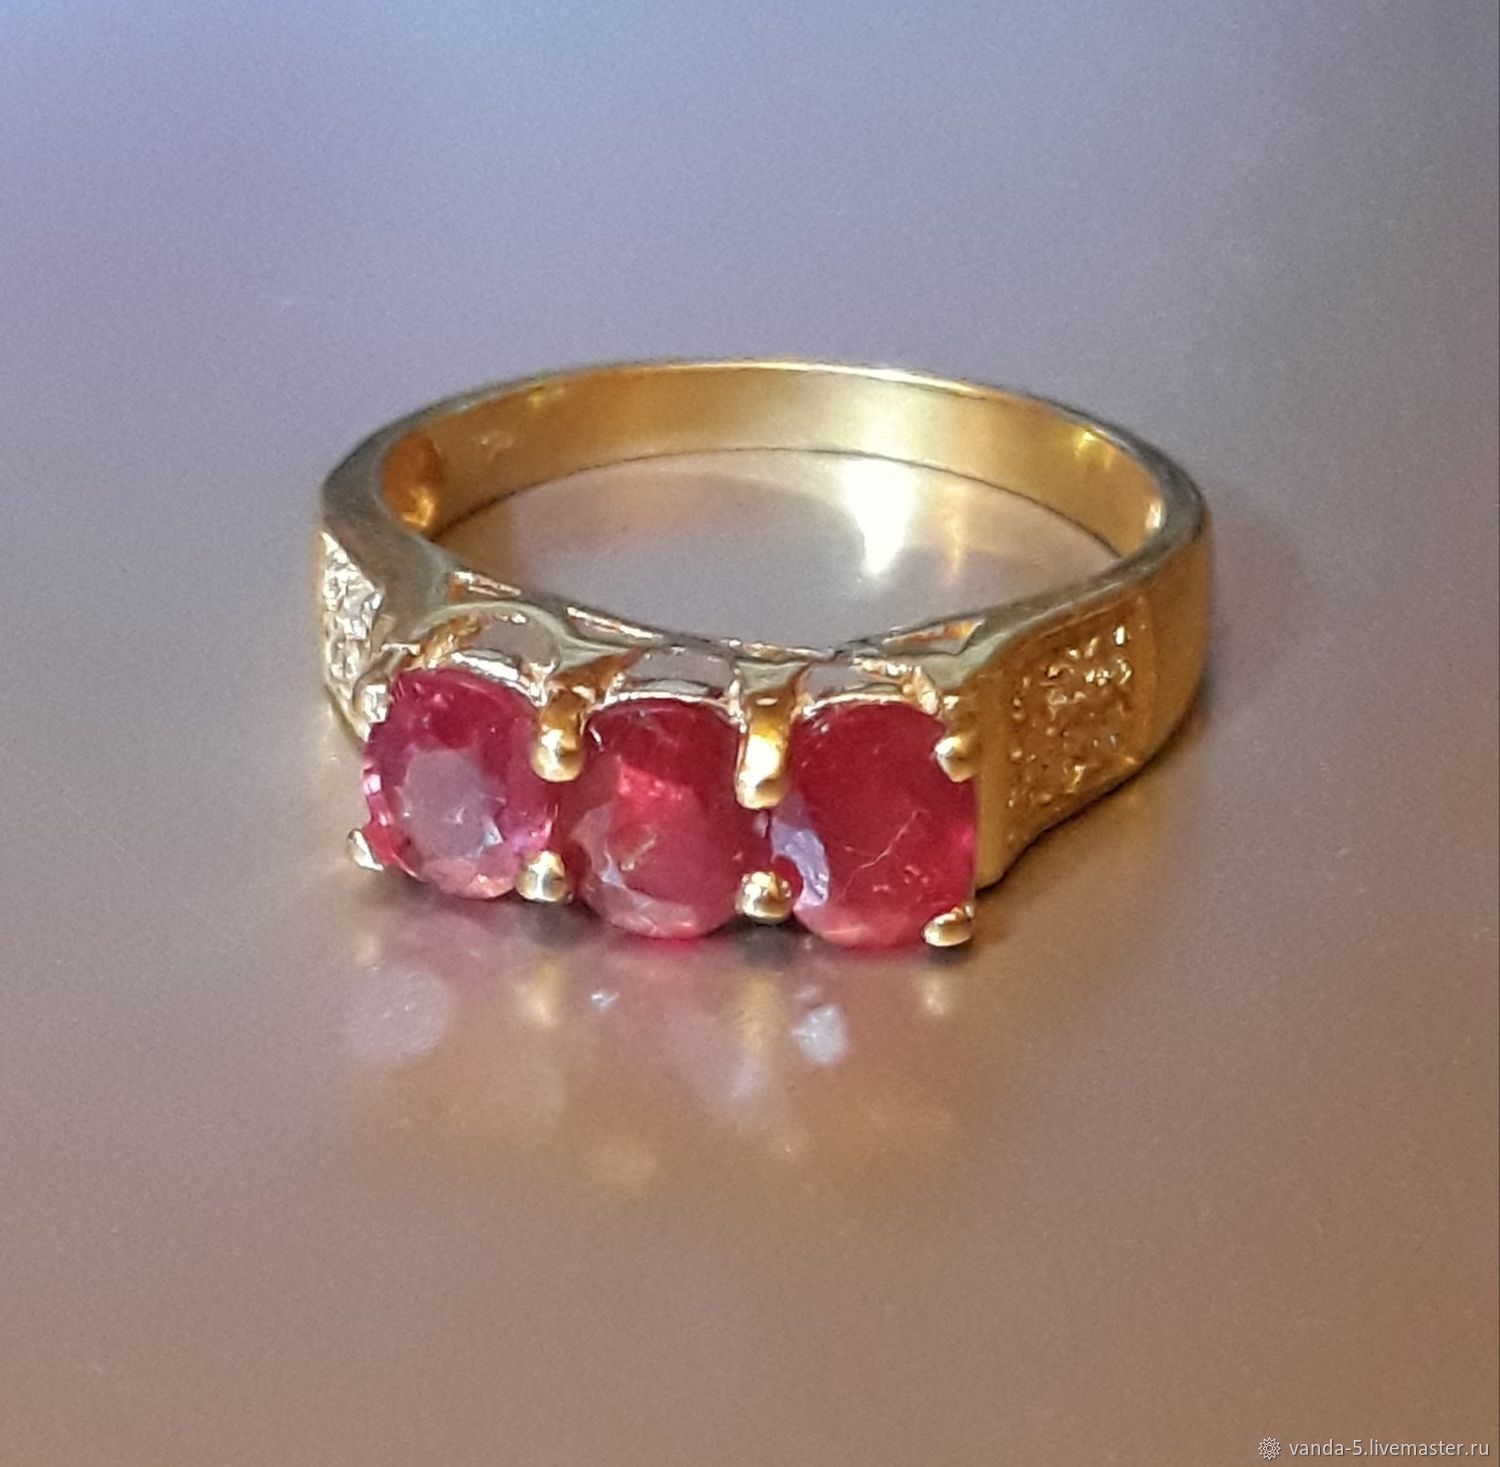 Купить кольцо в саратове. Кольцо с рубином. Старинное кольцо с рубином. Антикварные кольца с рубином. Кольцо из Червонного золота с рубином.